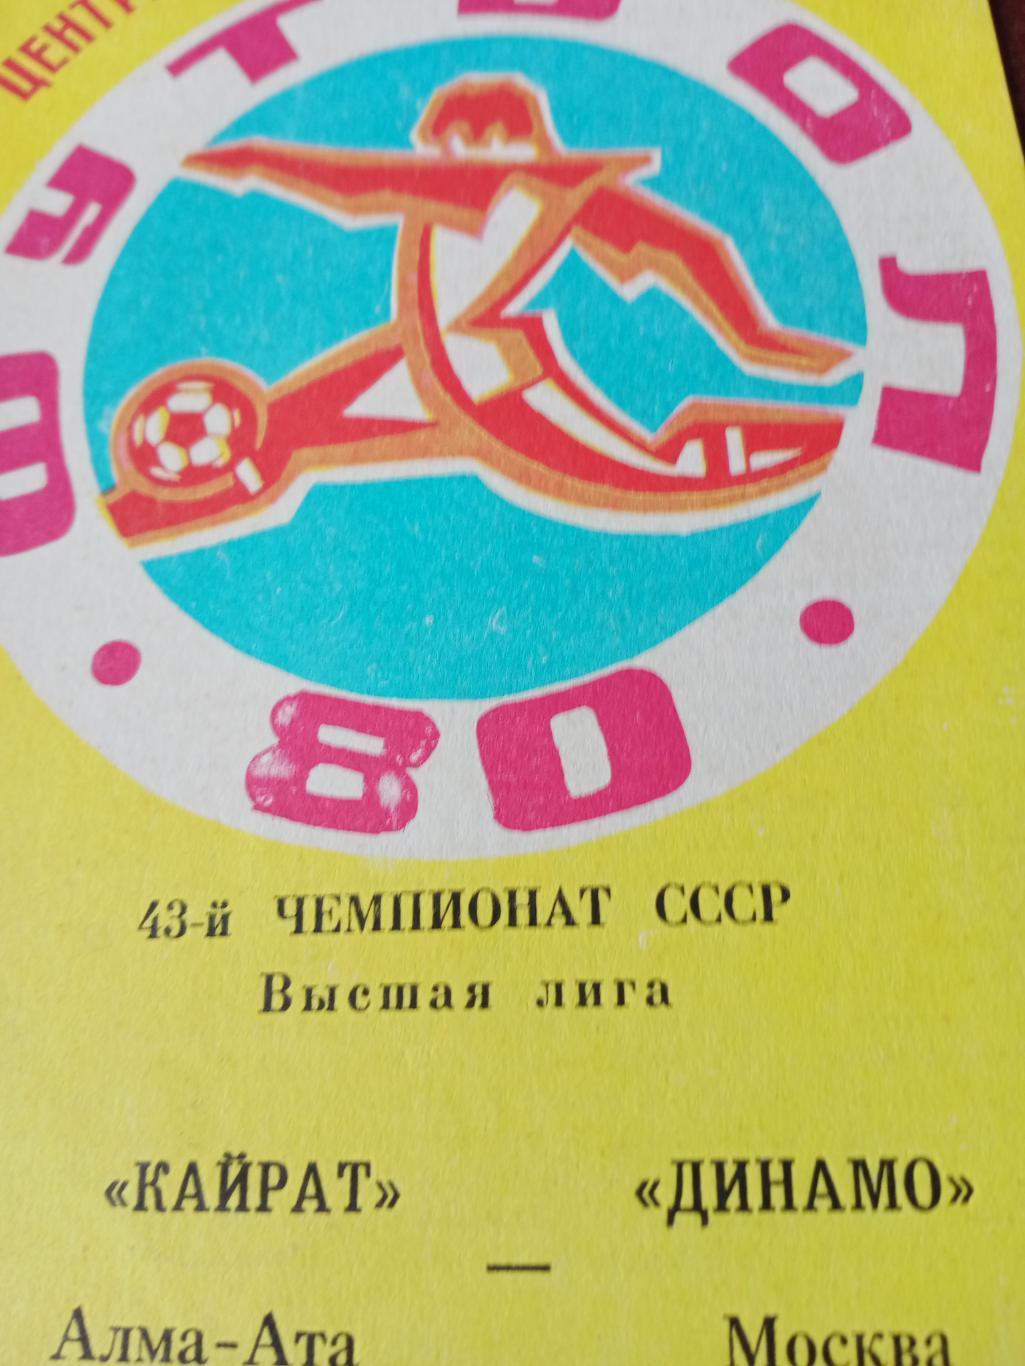 Кайрат Алма-Ата - Динамо Москва. 31 октября 1980 год